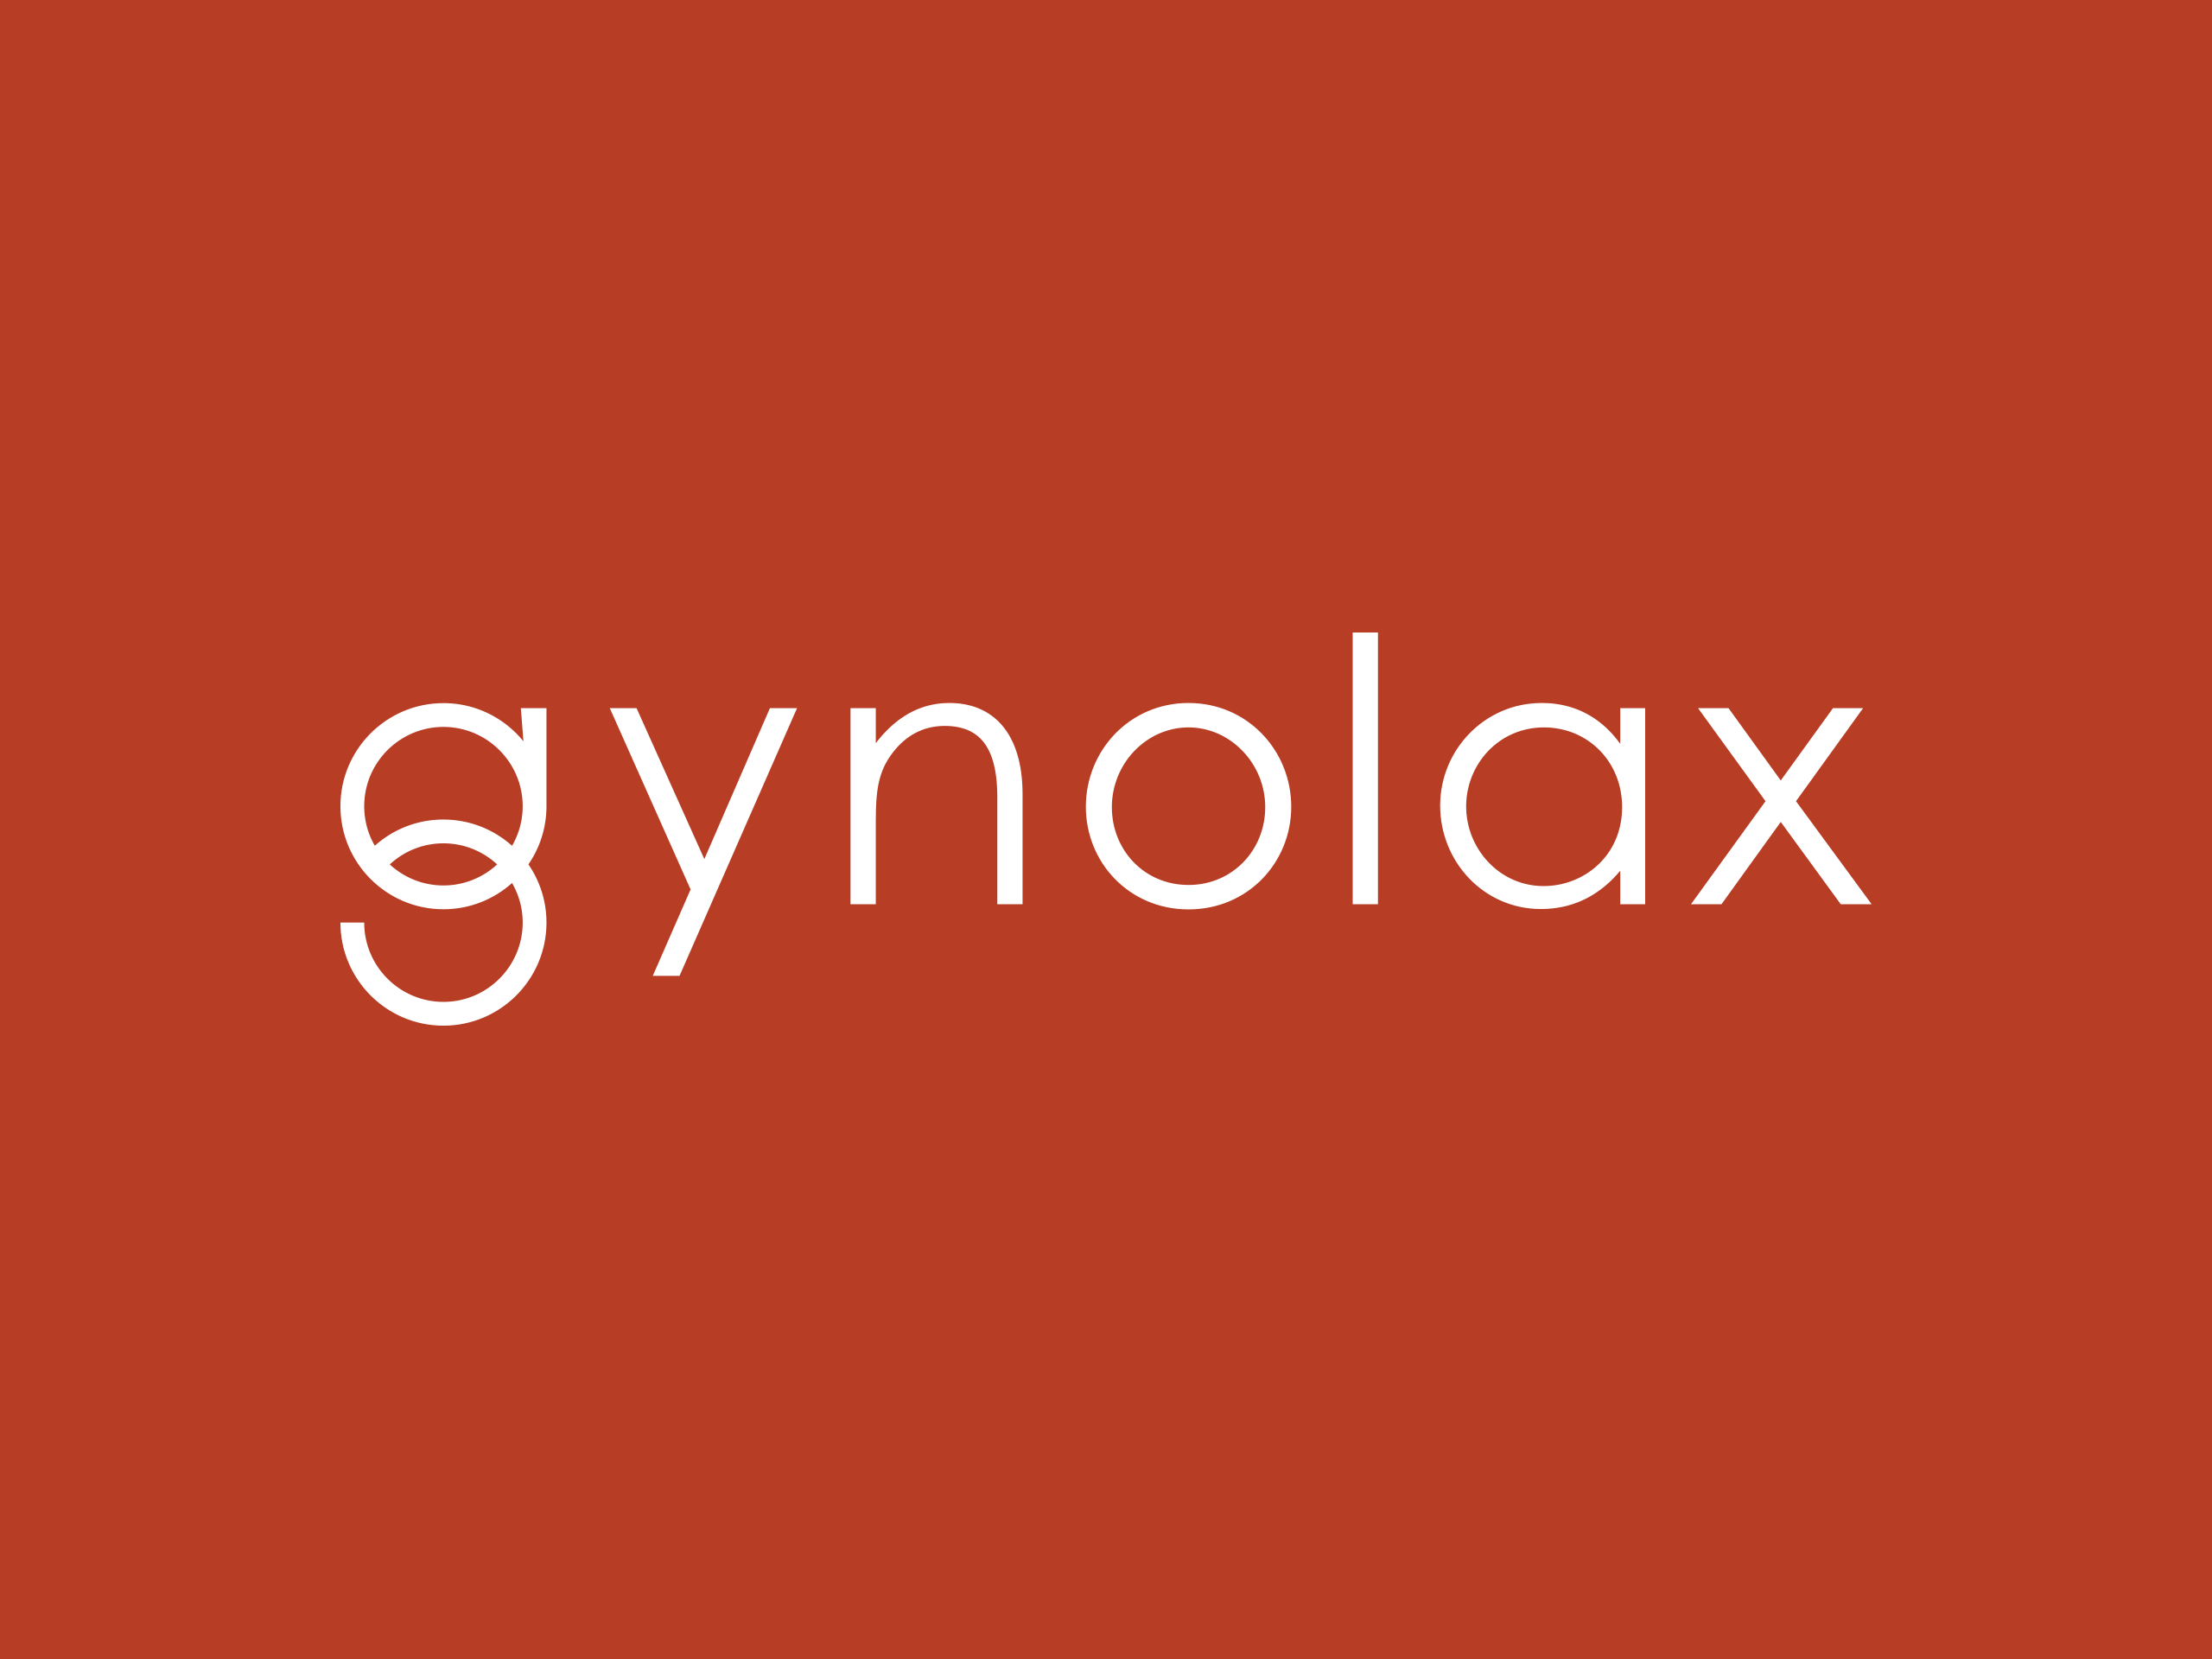 Gynolax